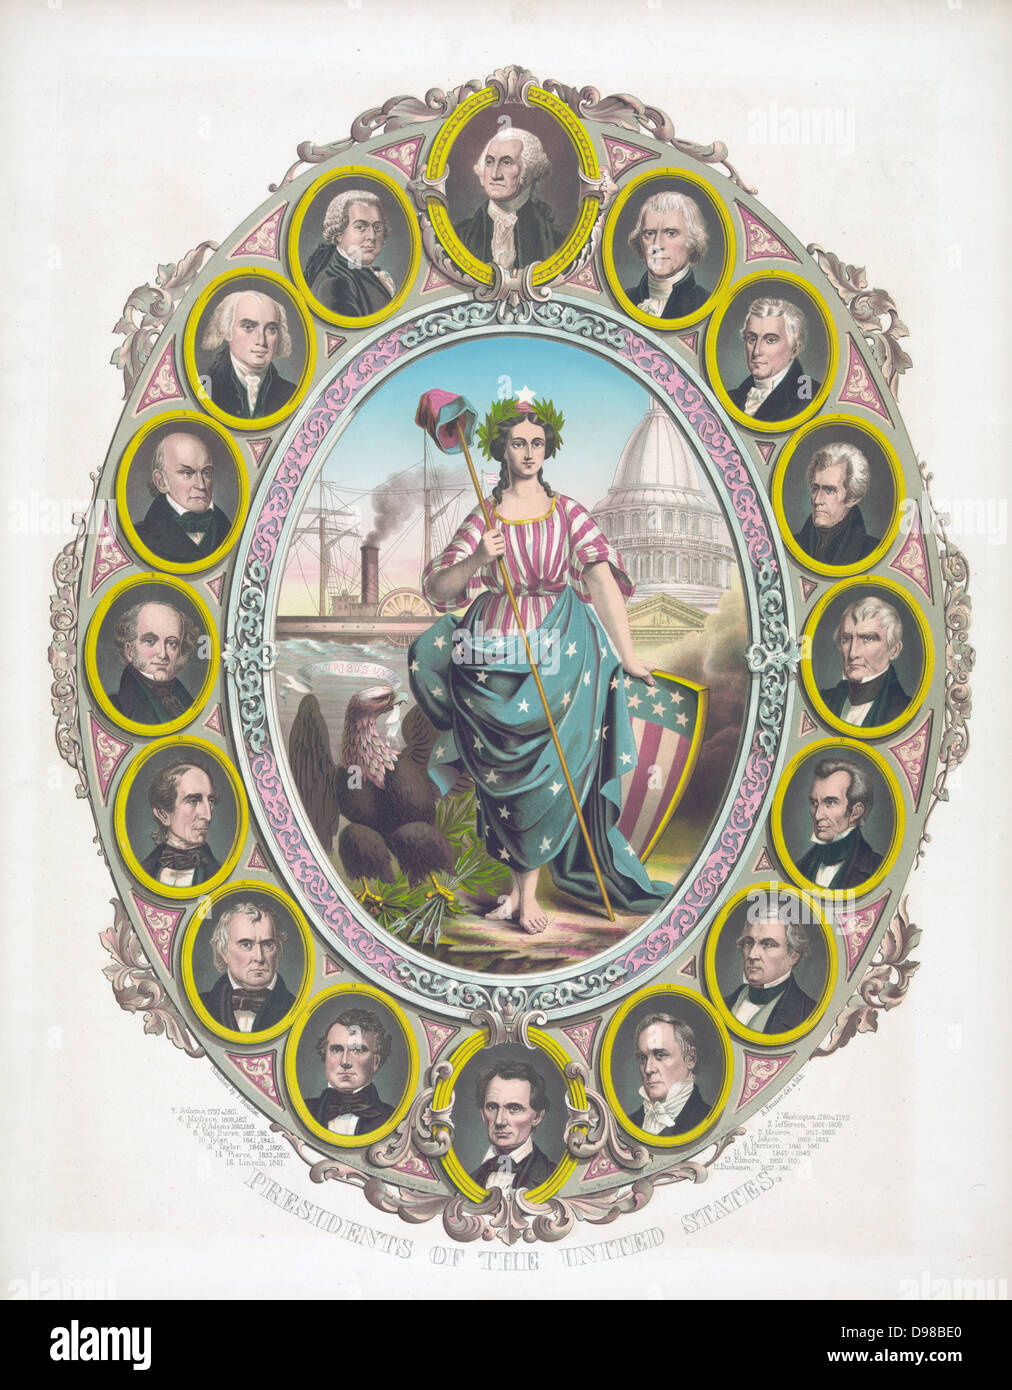 Columbia vestida de estrellas y rayas, sosteniendo un gorro de libertad y acompañado por un águila calva, rodeado por los retratos de los primeros 16 presidentes de los Estados Unidos de Washington , en la parte superior, un lampiño Lincoln en la parte inferior. Litografía de color c1861. Foto de stock